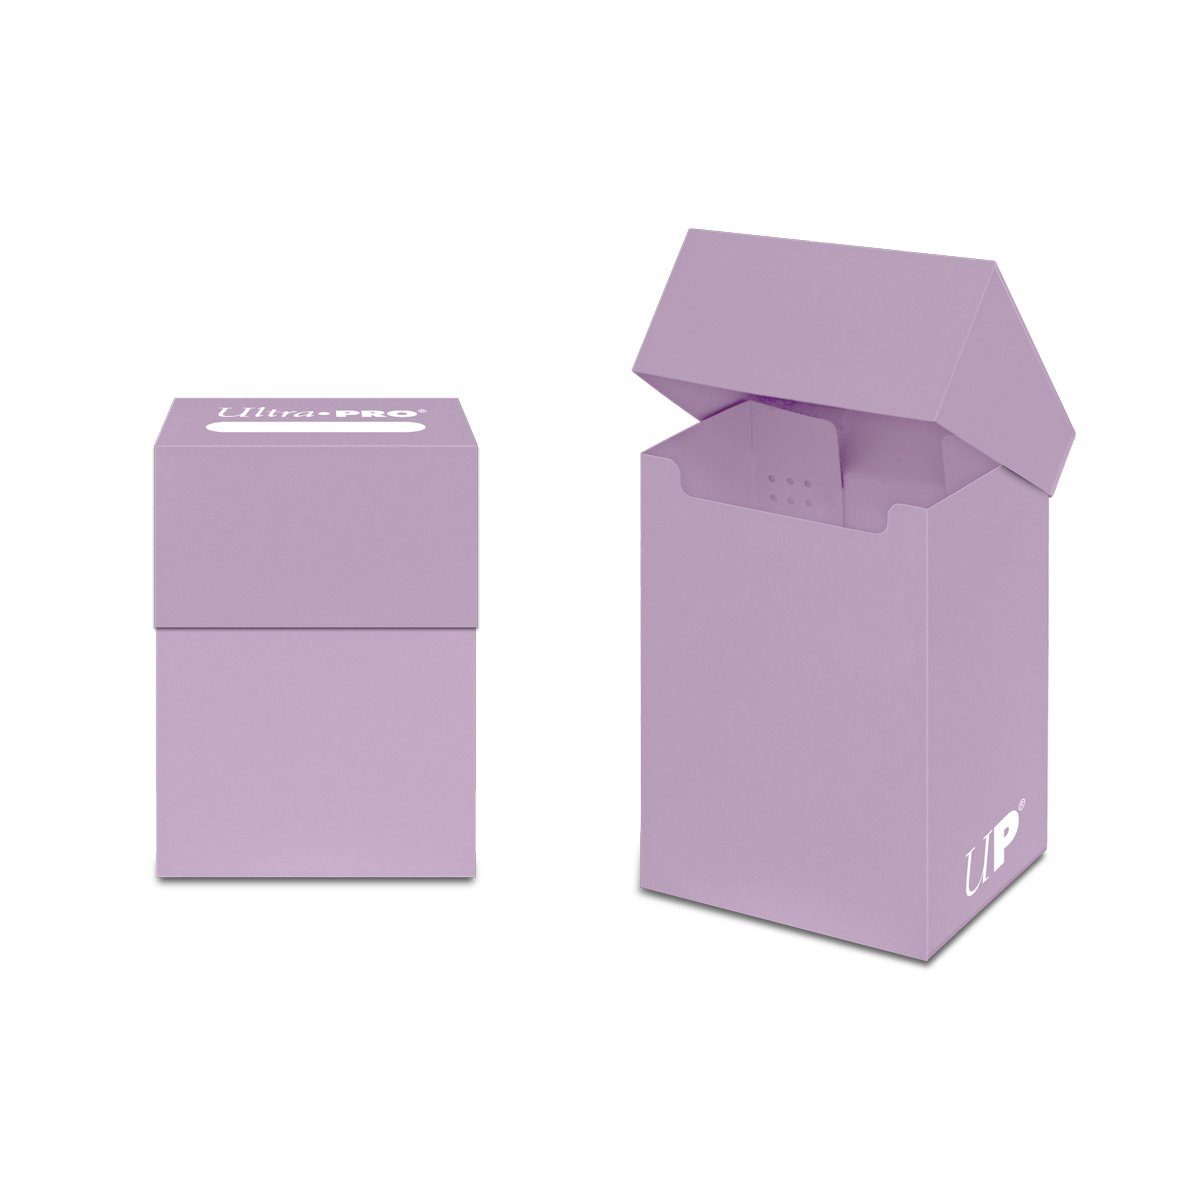 Ultra Pro Sammelkarte Ultra Pro - Aufbewahrungsbox für Sammelkarten - pastell-lila